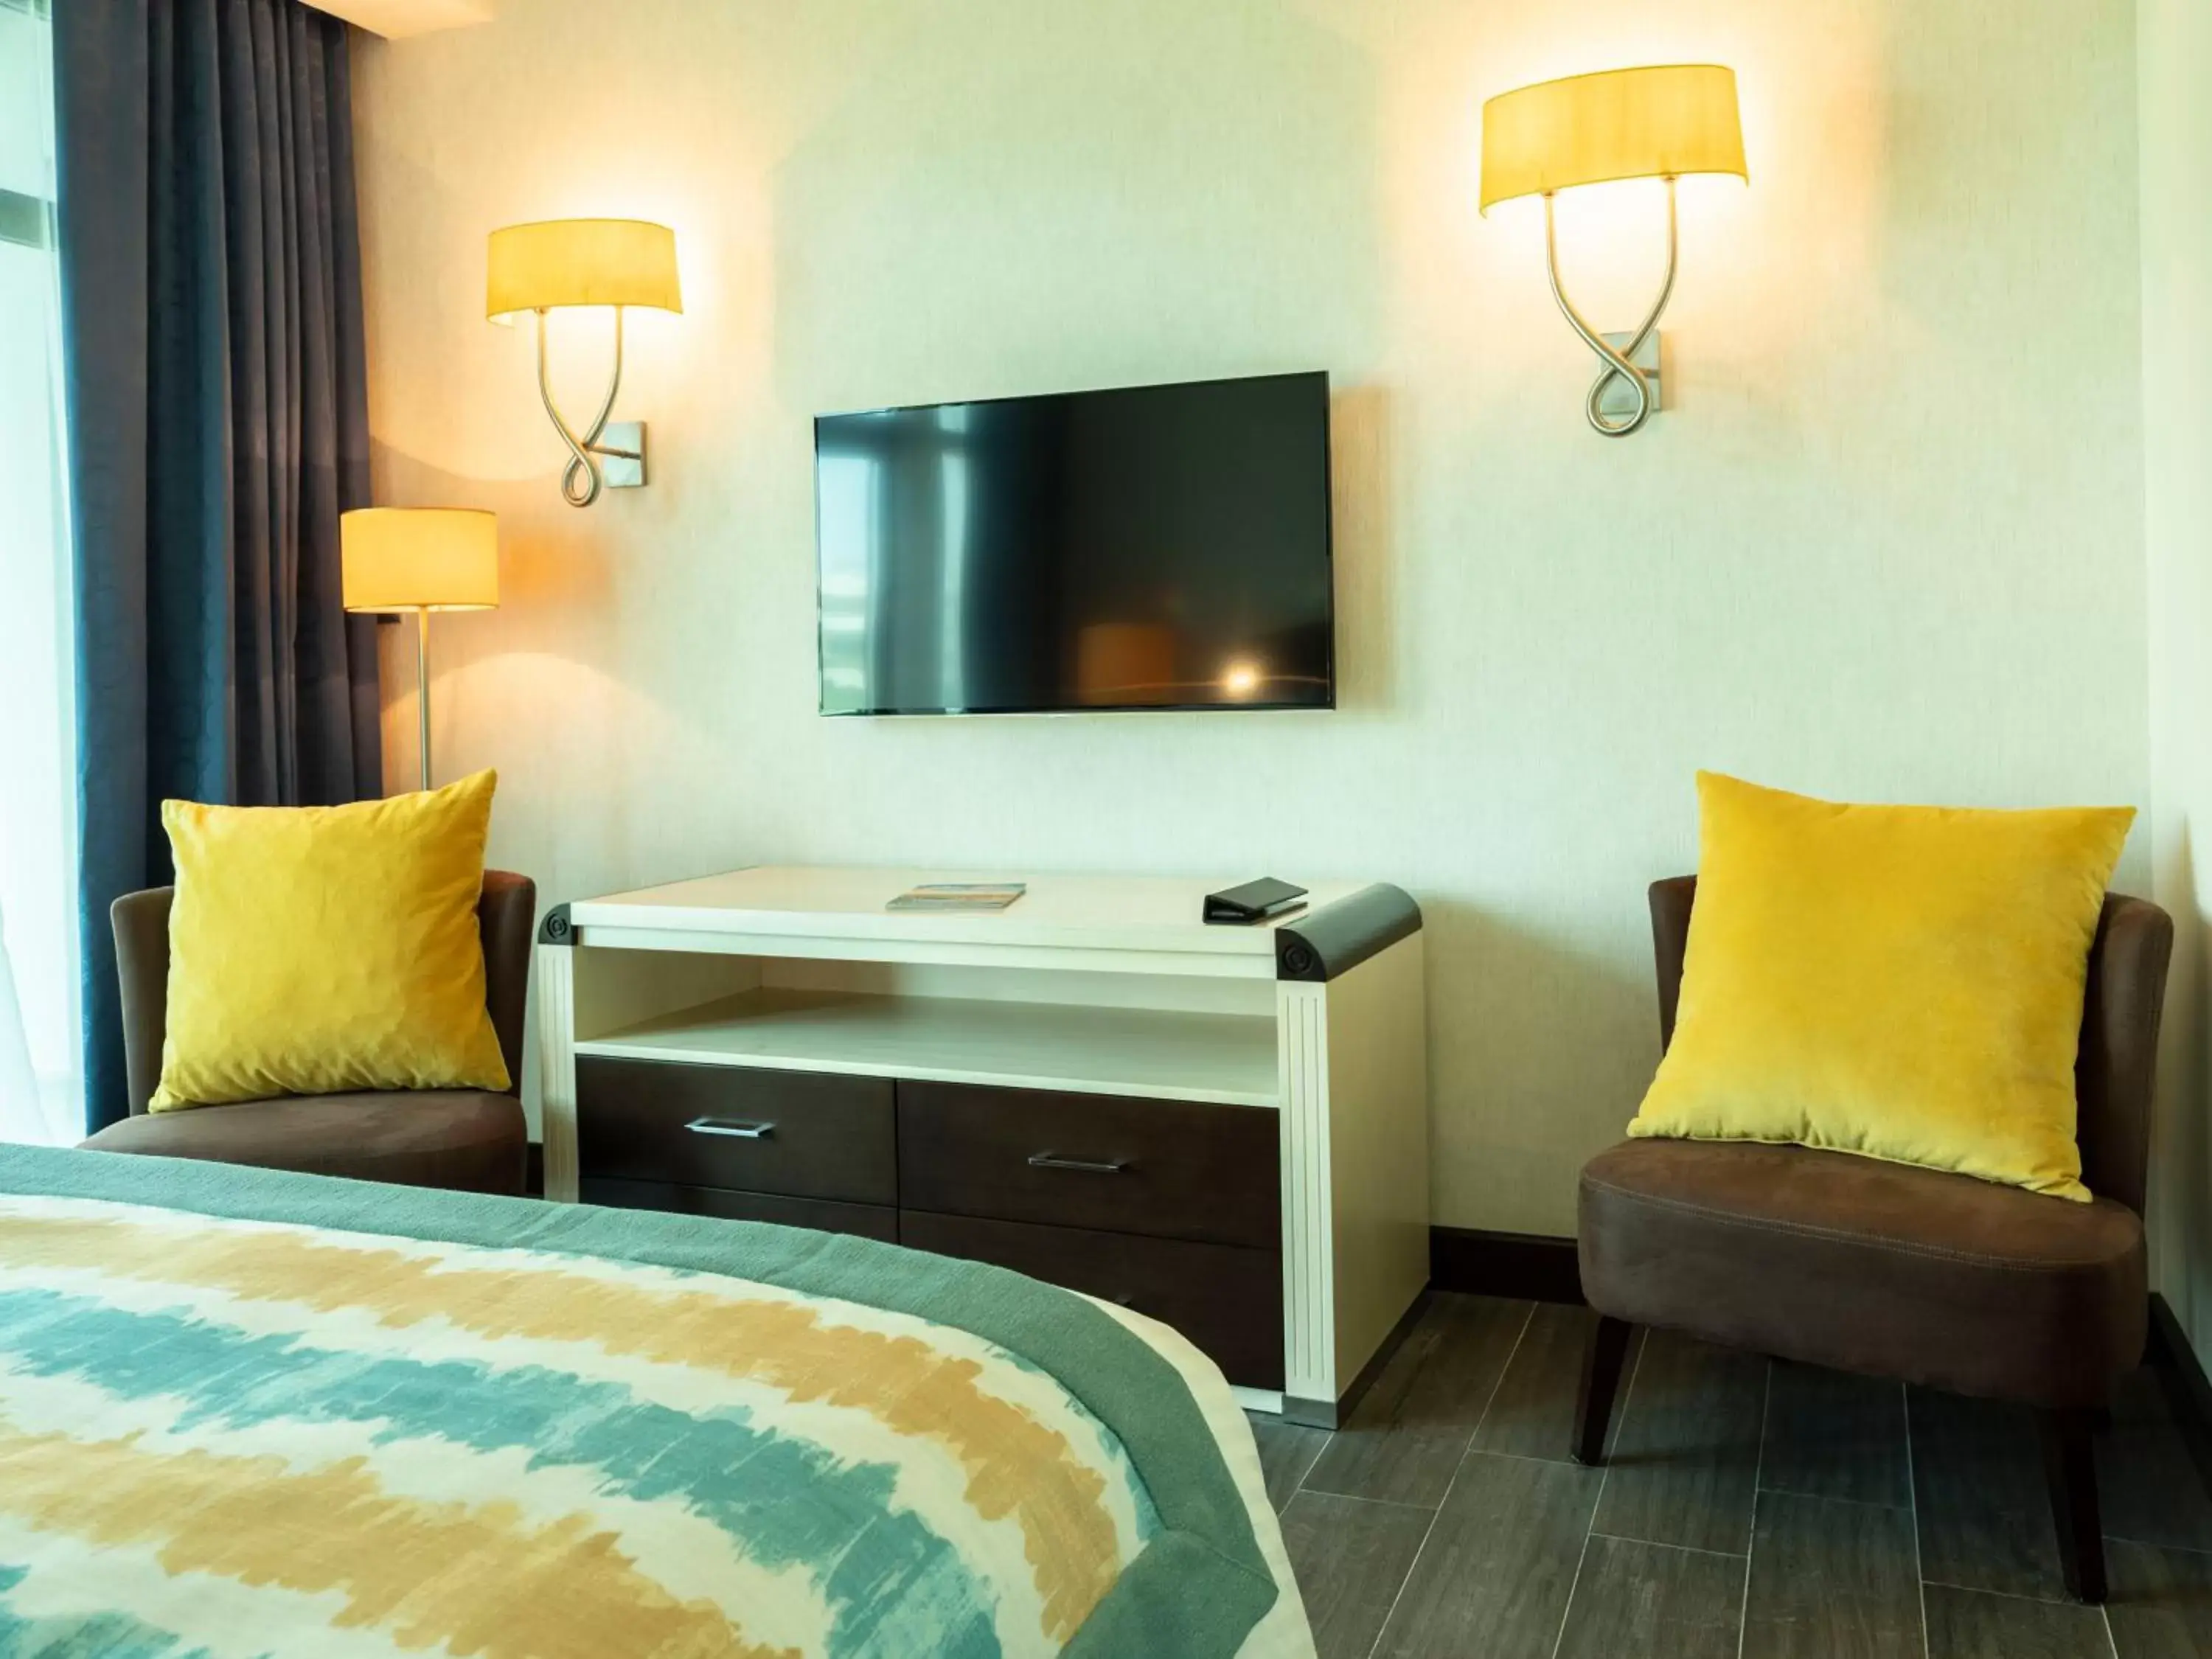 Bedroom, TV/Entertainment Center in Retaj Salwa Resort & Spa